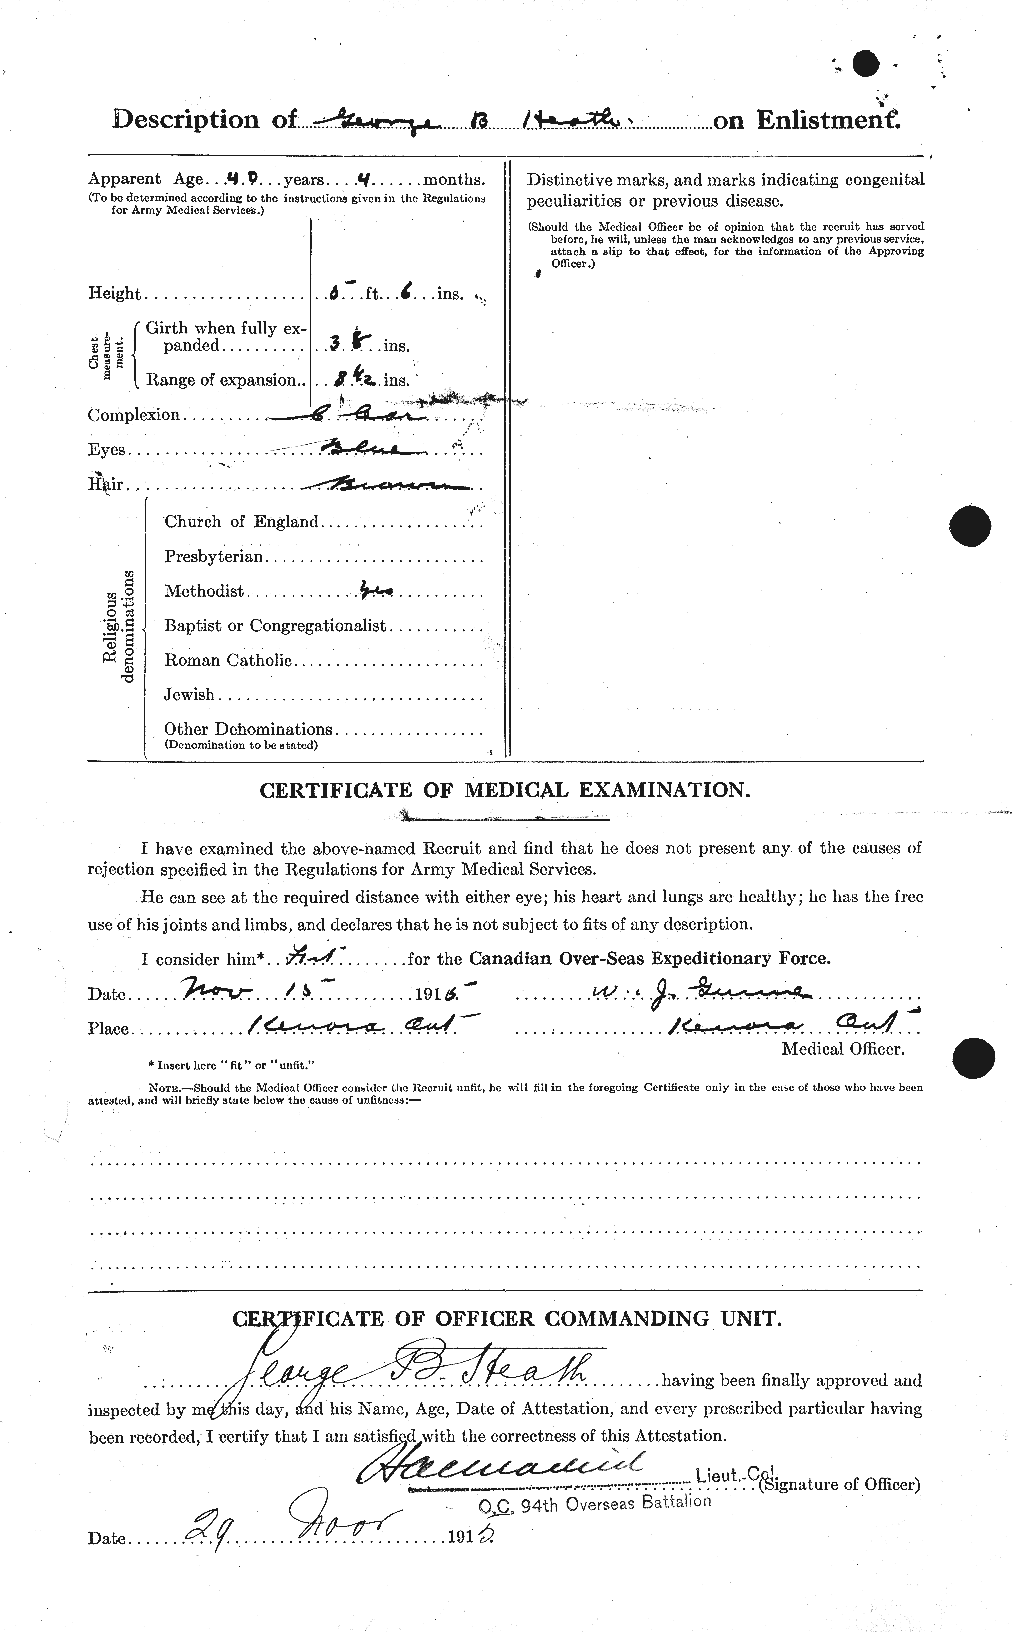 Dossiers du Personnel de la Première Guerre mondiale - CEC 386251b